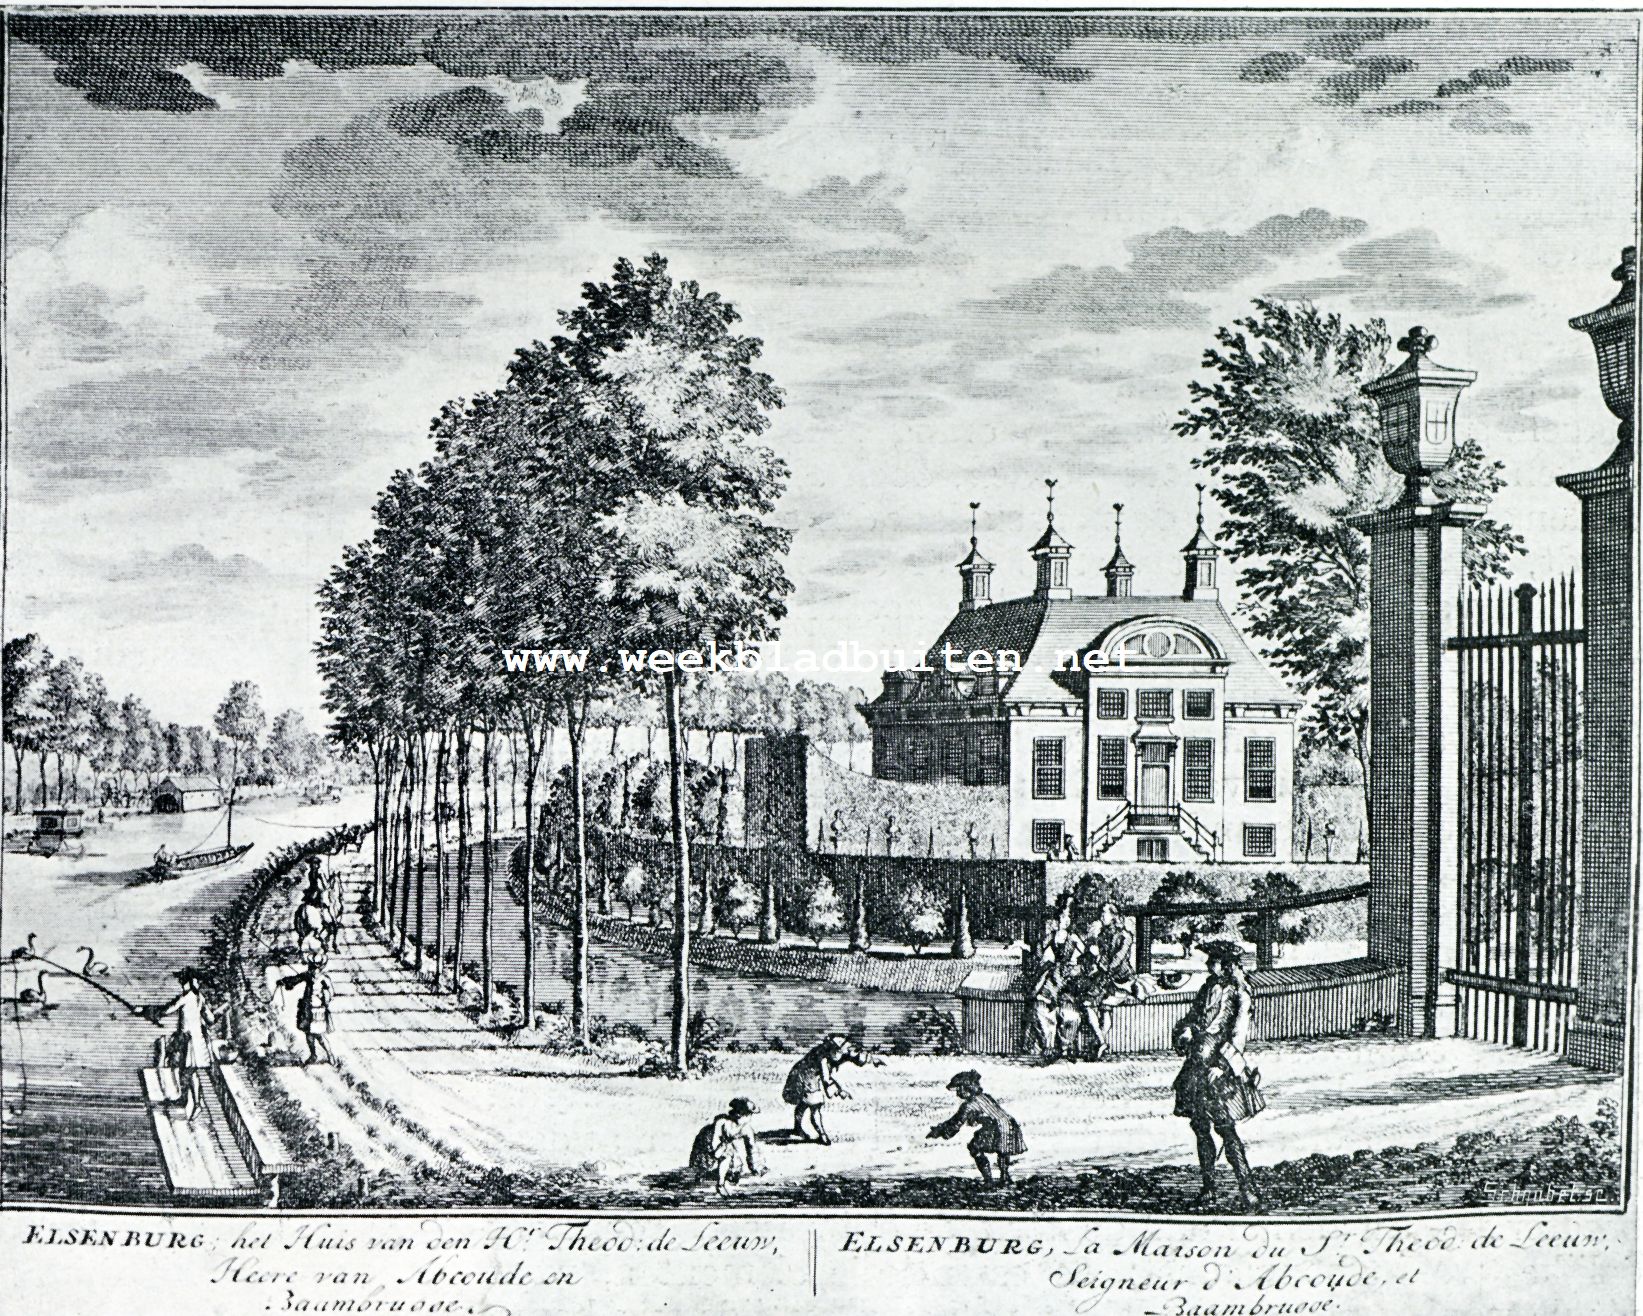 De ontwikkelingsgeschiedenis van het Hollandsche landhuis. Het landhuis Elzenburg aan de Vecht bij Maarssen. Uit: 